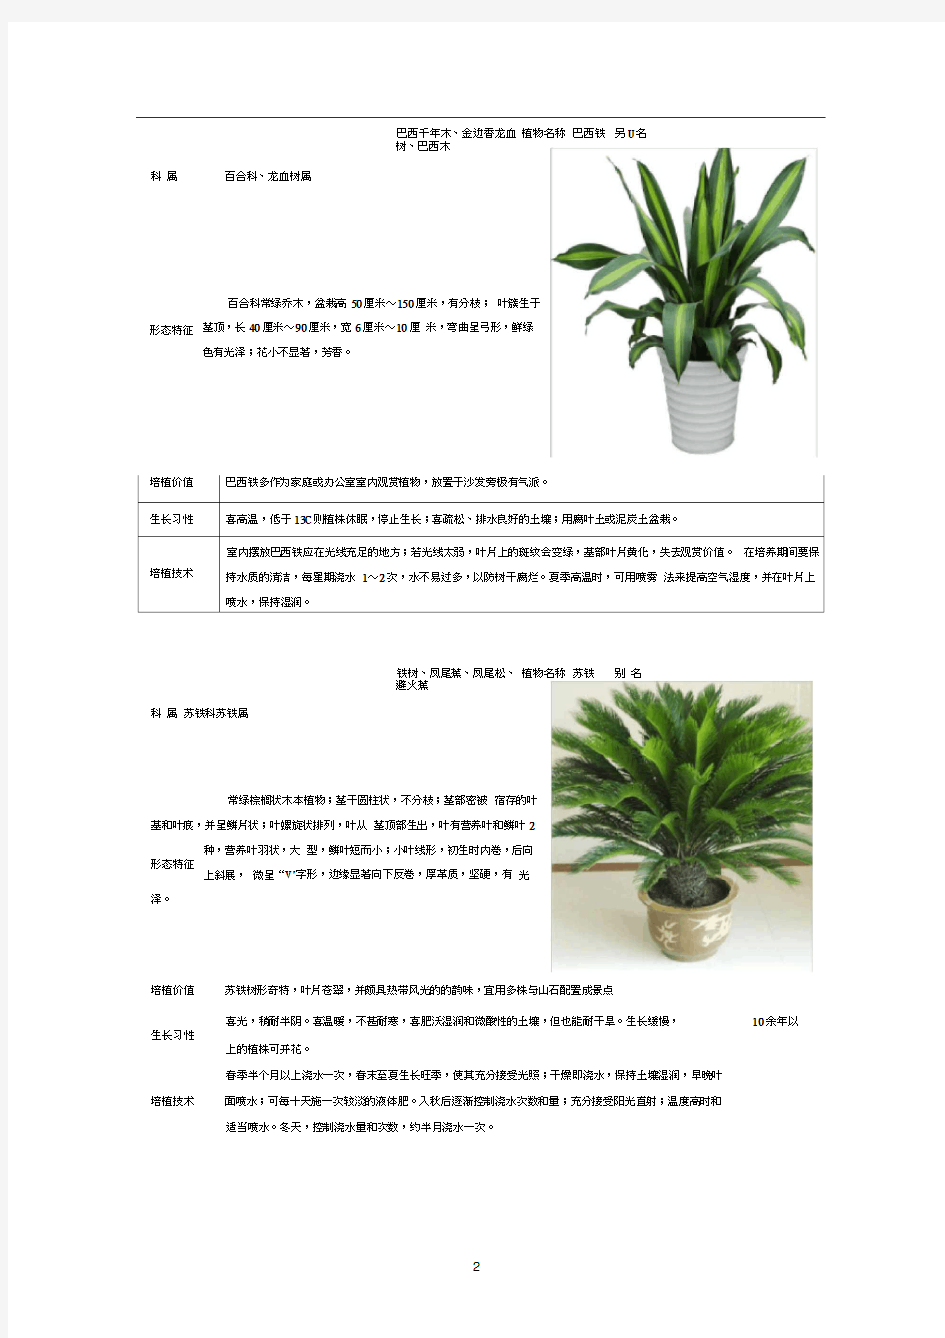 50种常见室内绿化植物介绍(带高清图片)